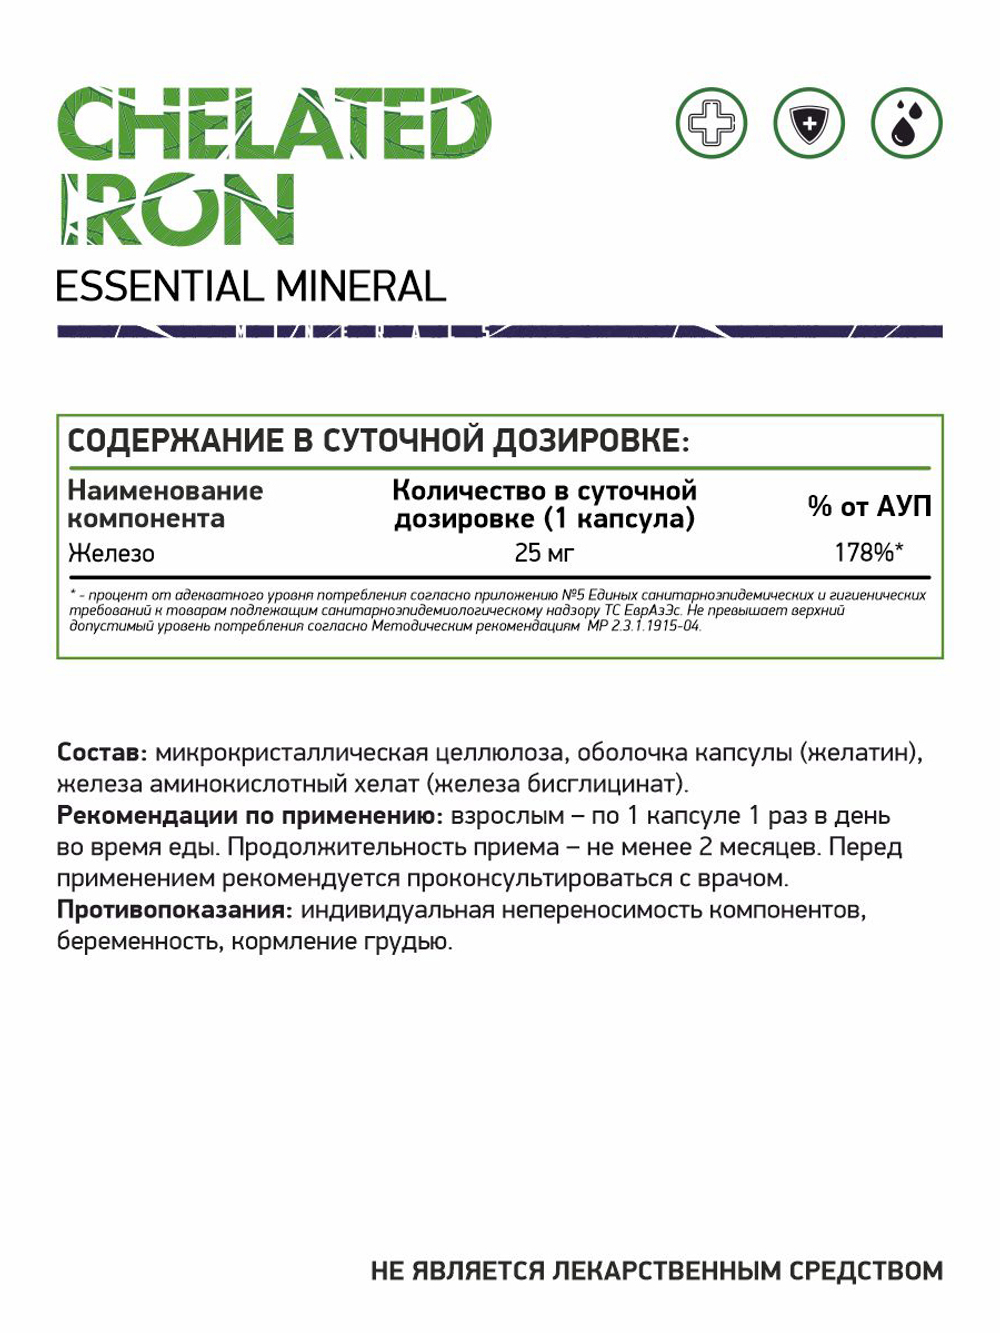 Iron Chelate (Хелат железа) 60 капс. (Naturalsupp)